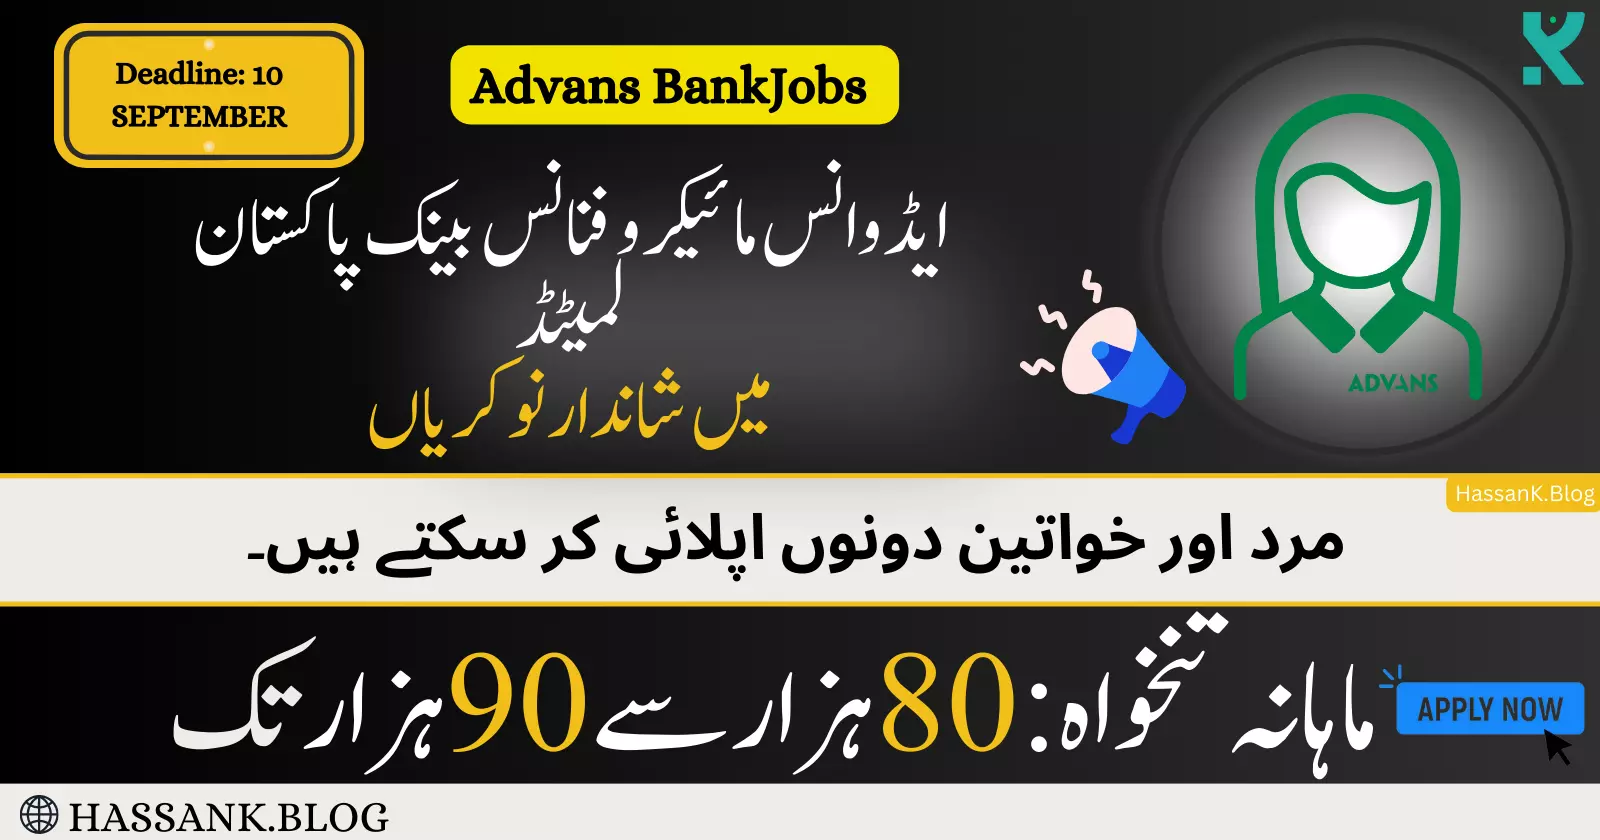 ADVANS Microfinance Bank Pakistan Ltd